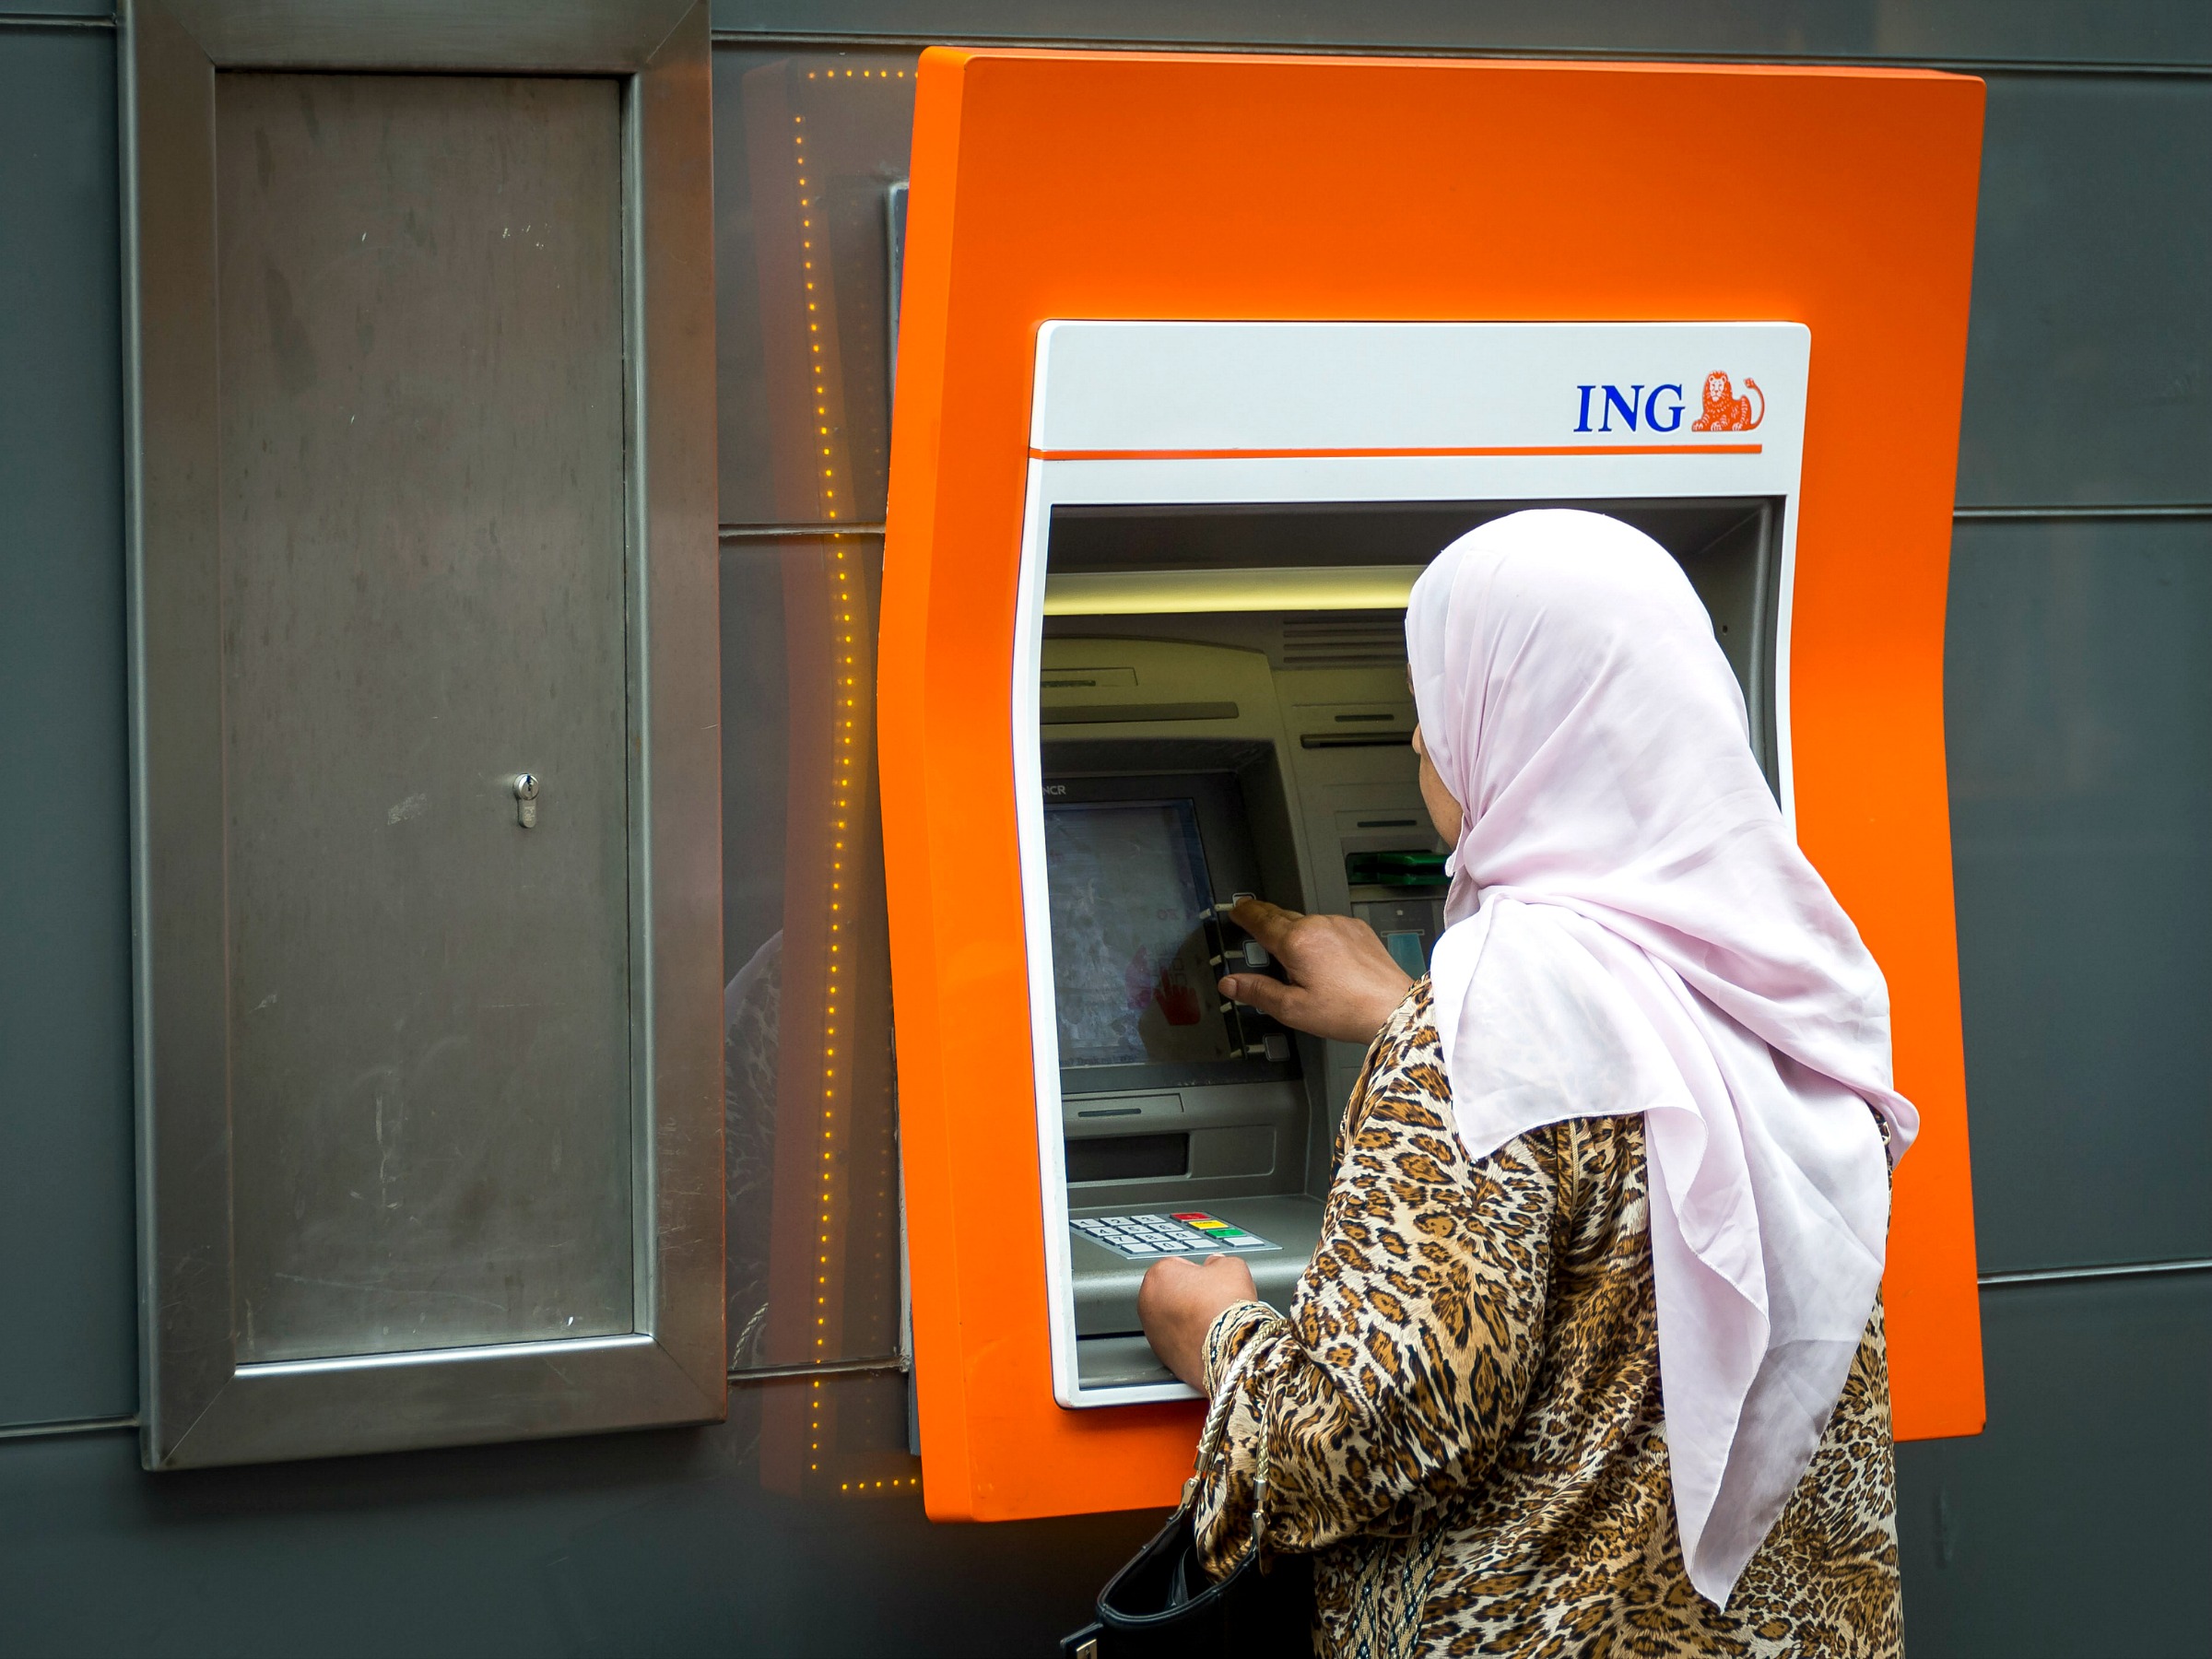 combinatie kern Impasse 5 vragen over de uniforme geldautomaten die Rabobank, ABN Amro en ING willen